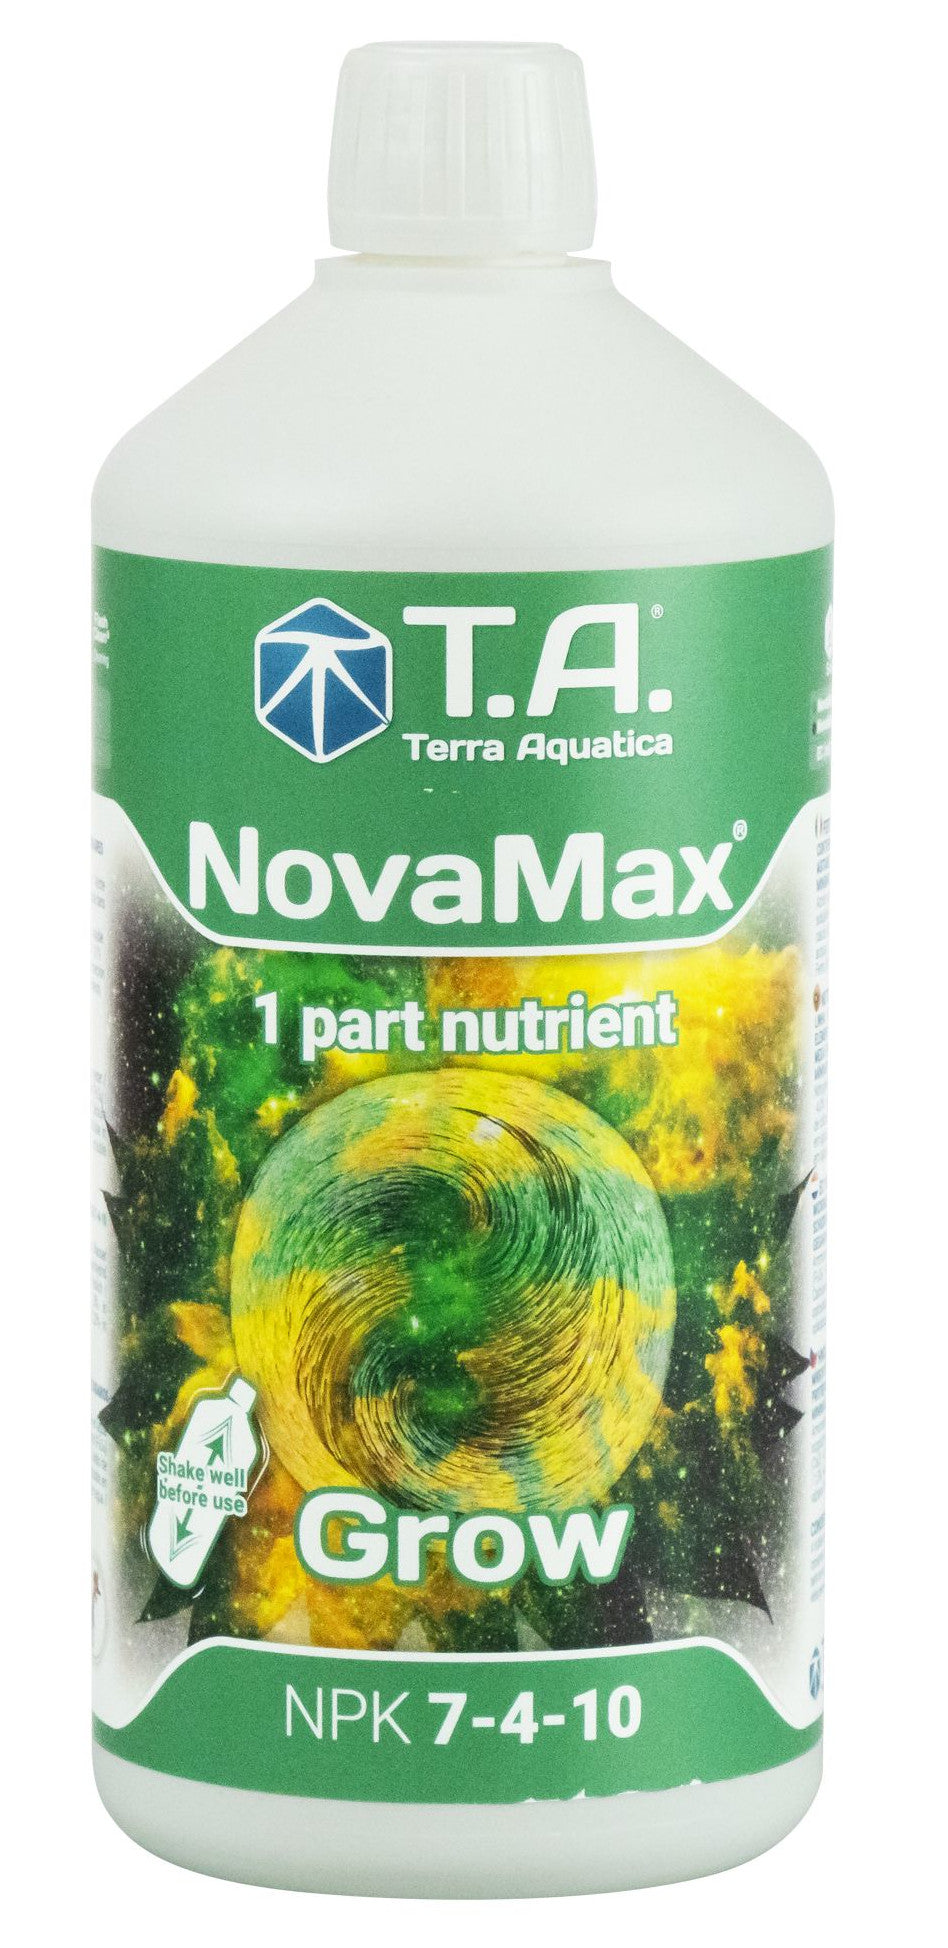 T.A. NovaMax Grow 1 Liter